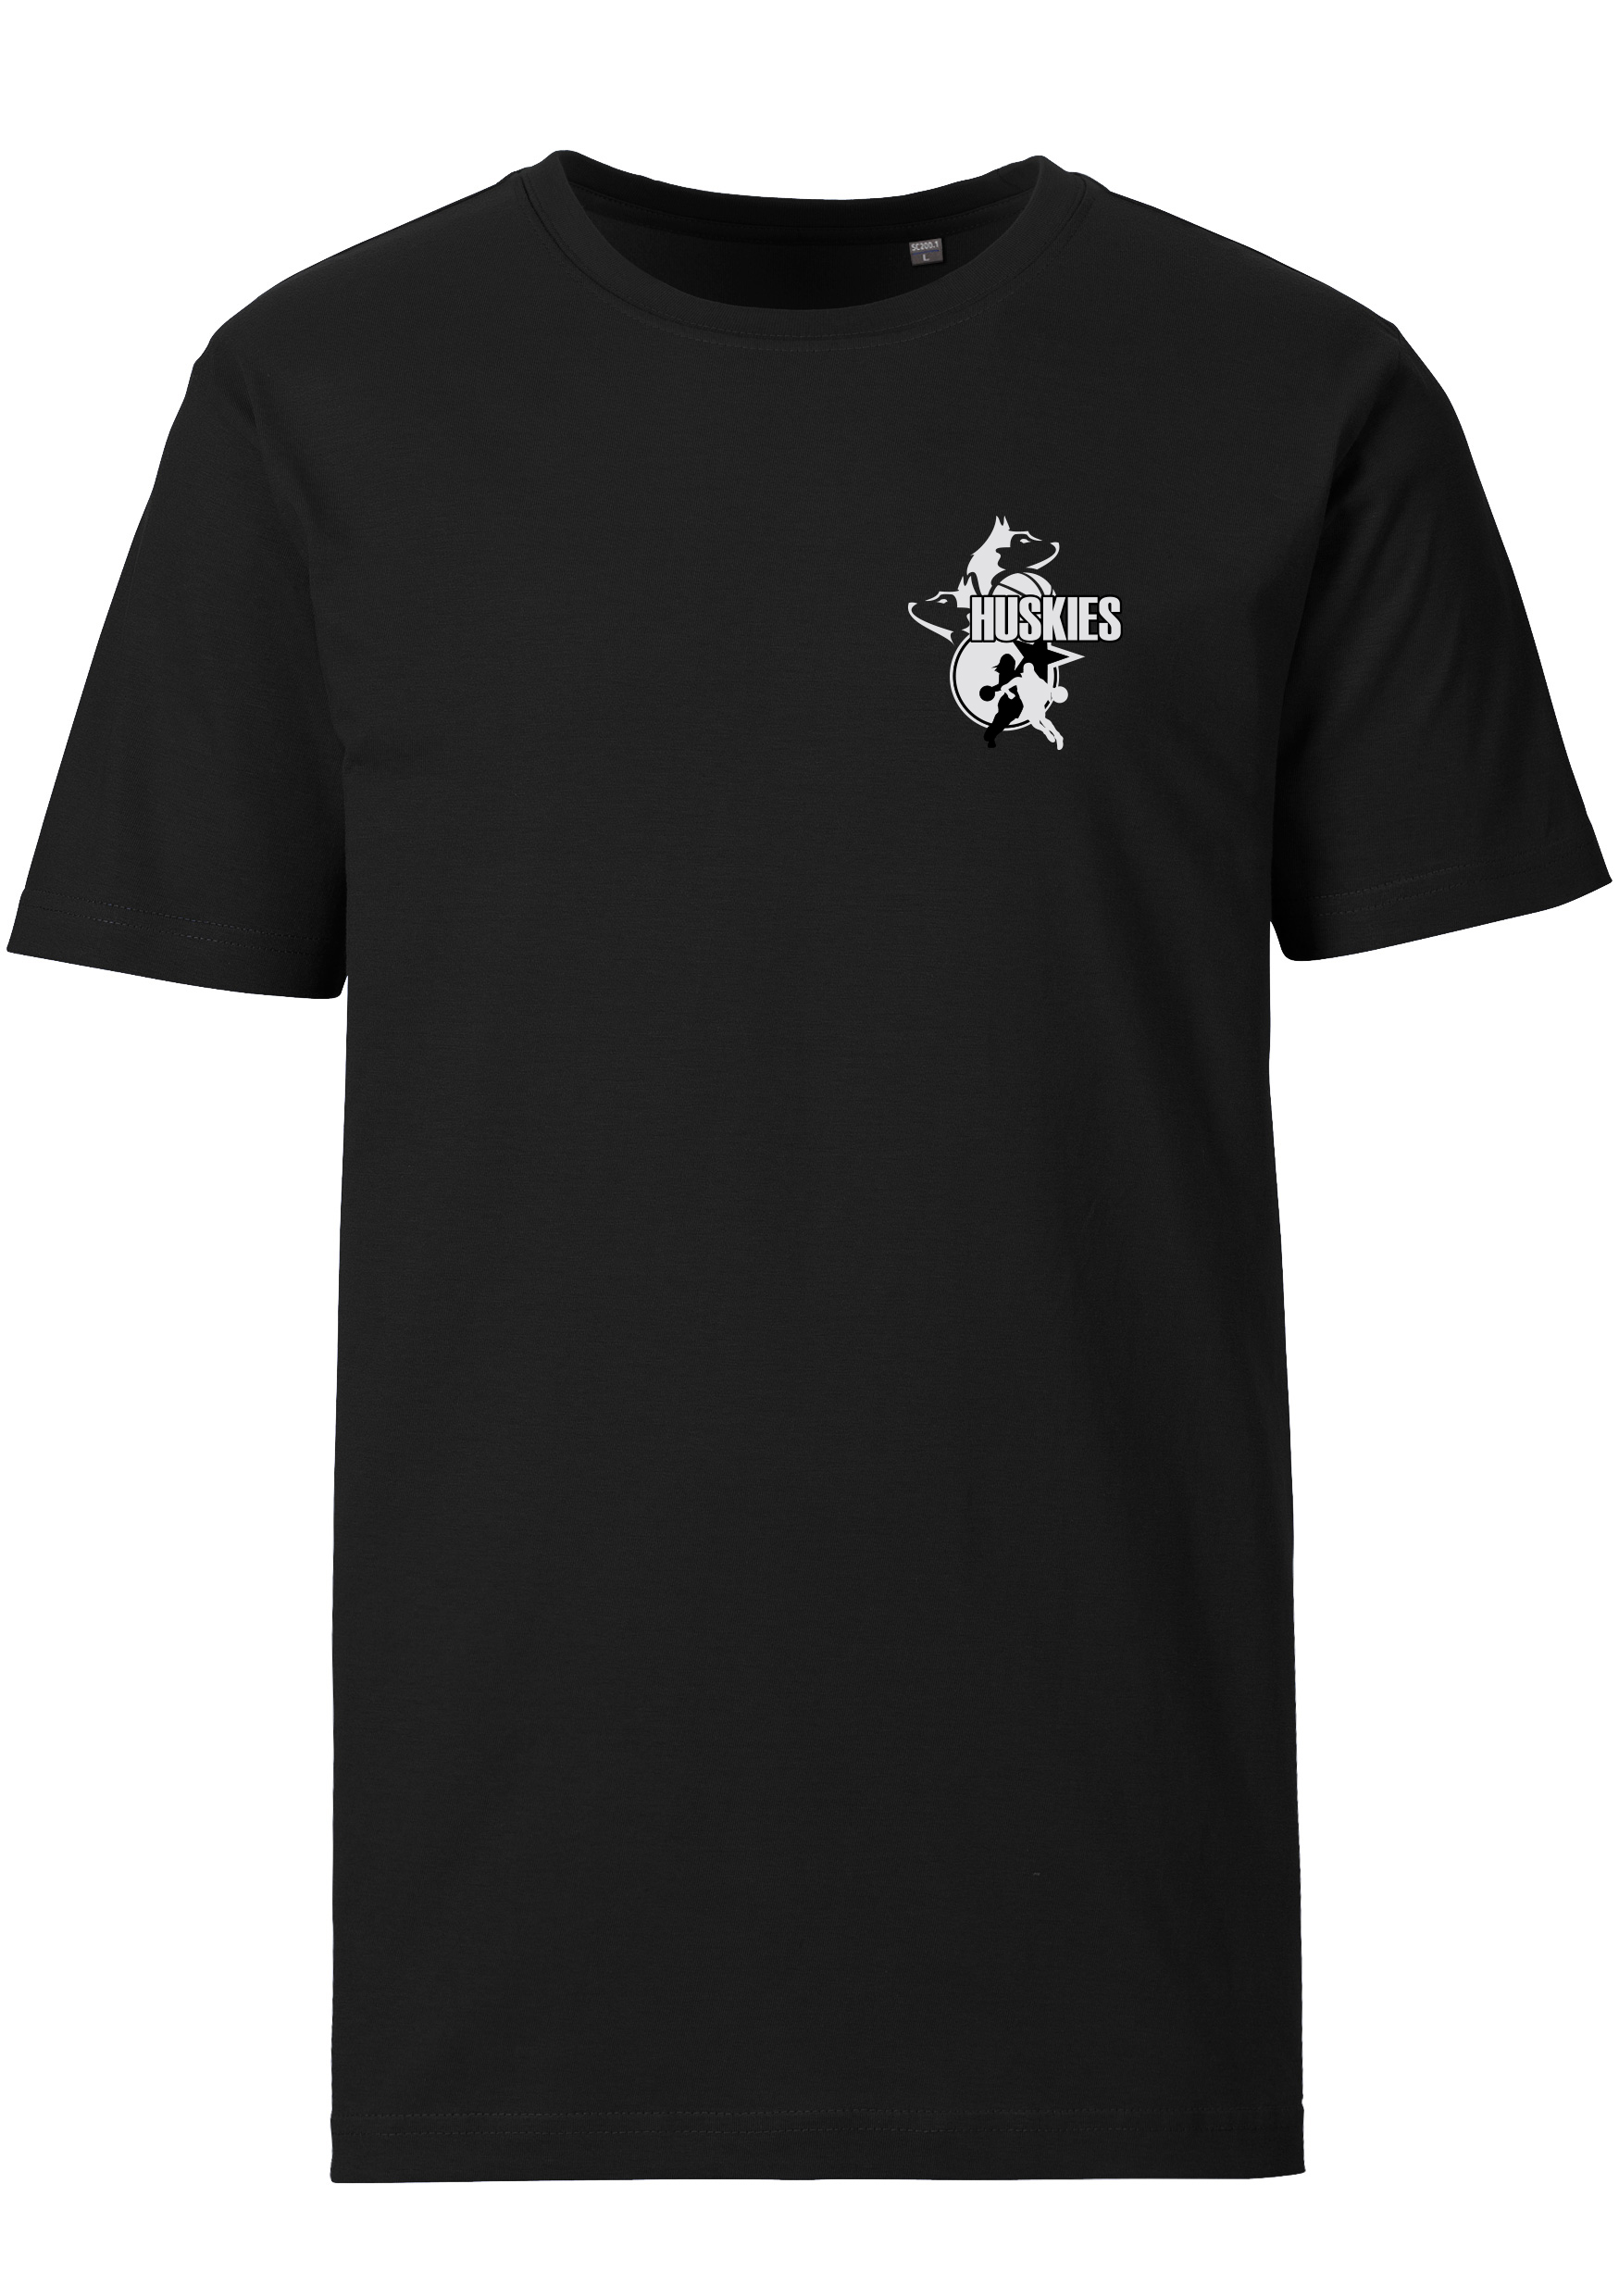 Huskies T-Shirt Logo klein